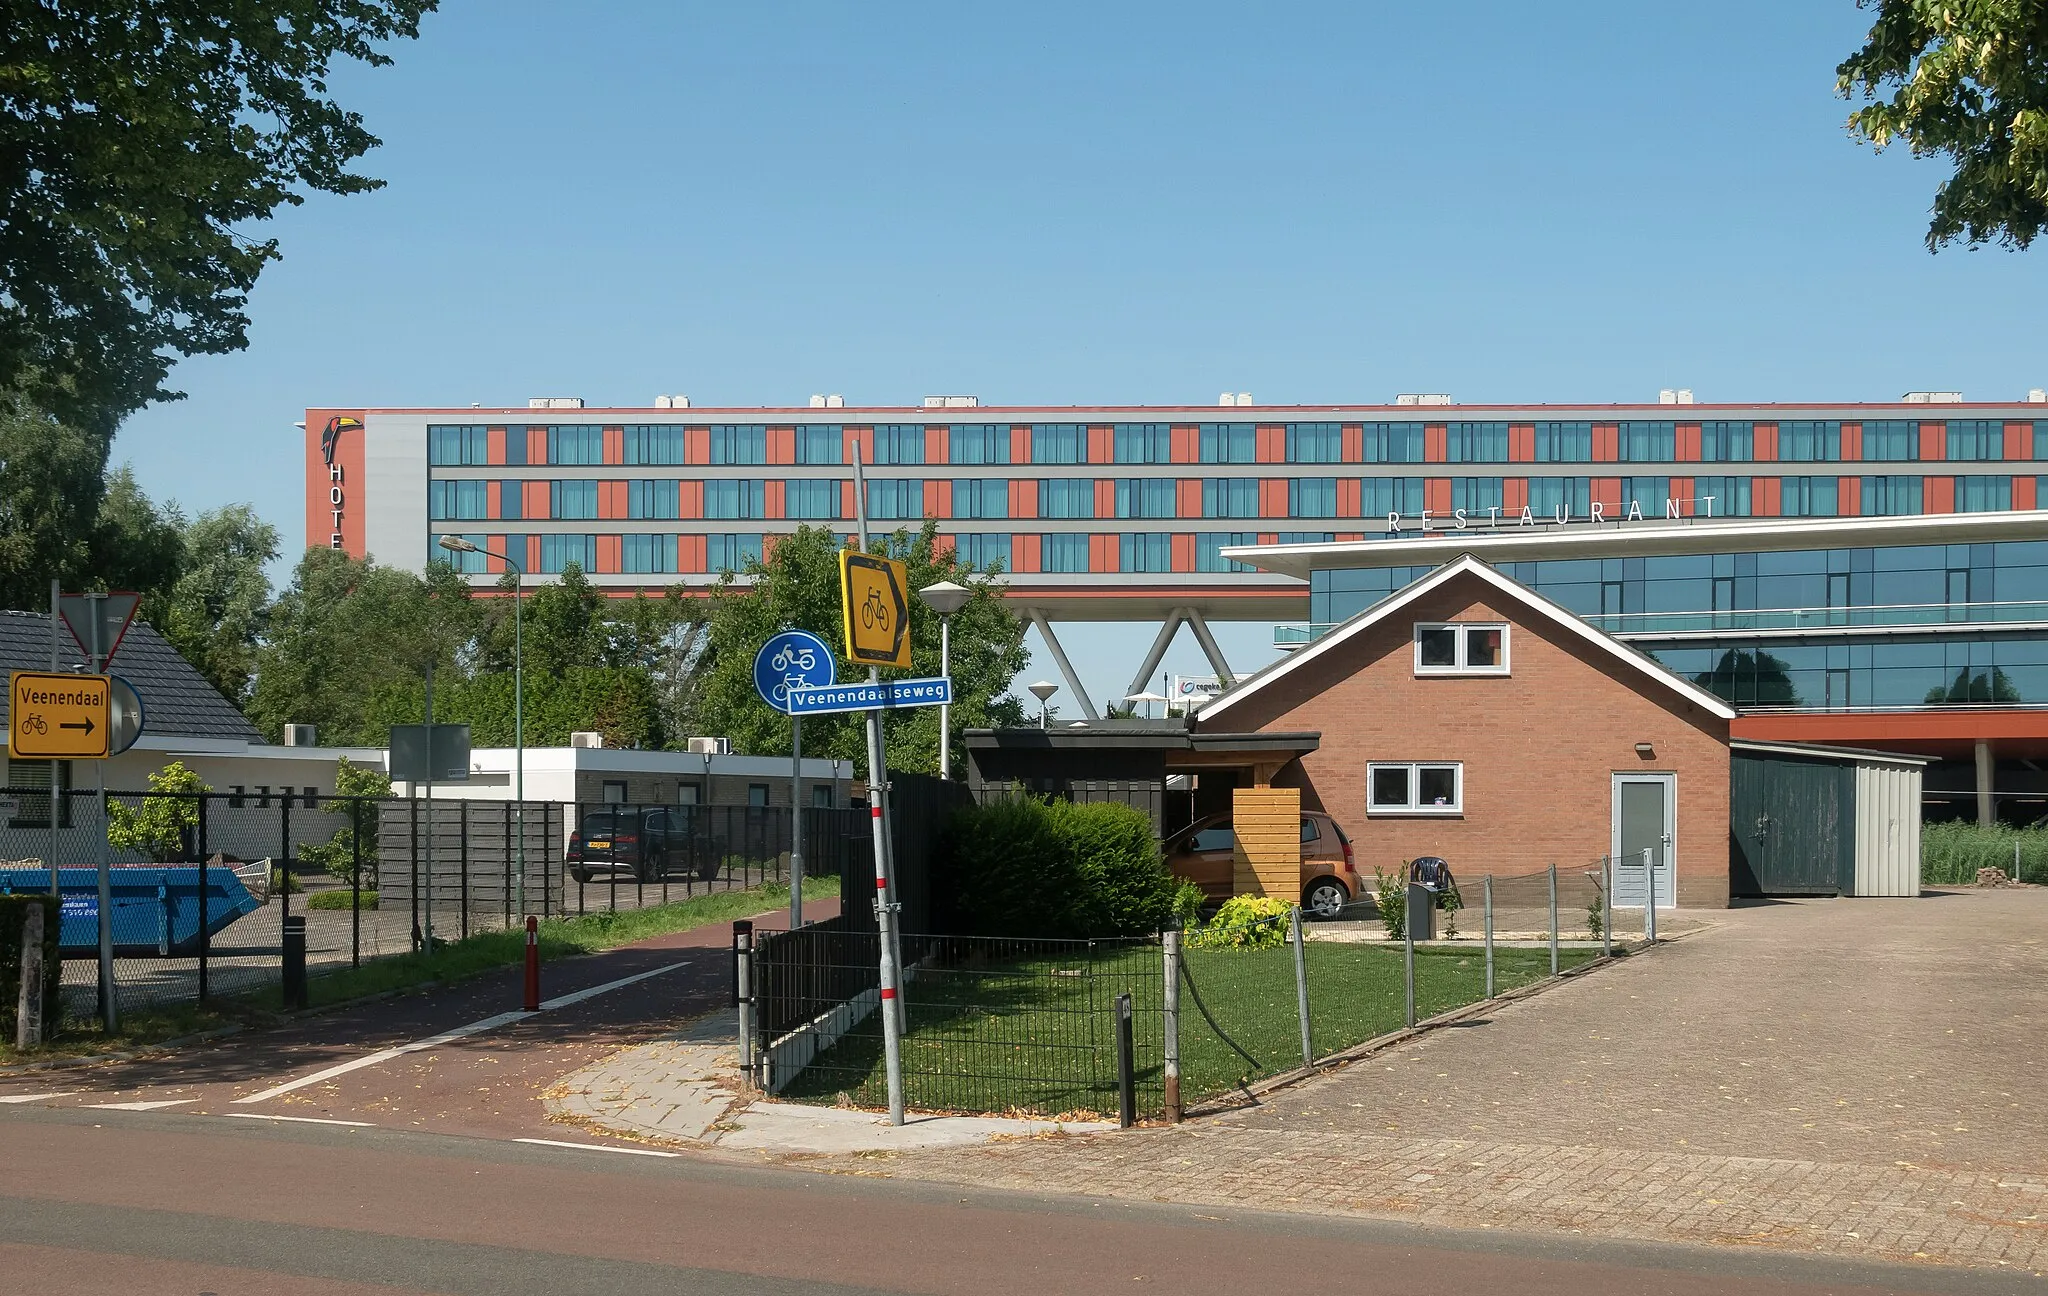 Photo showing: De Klomp (near Veenendaal), Van der Valkhotel Veenendaal